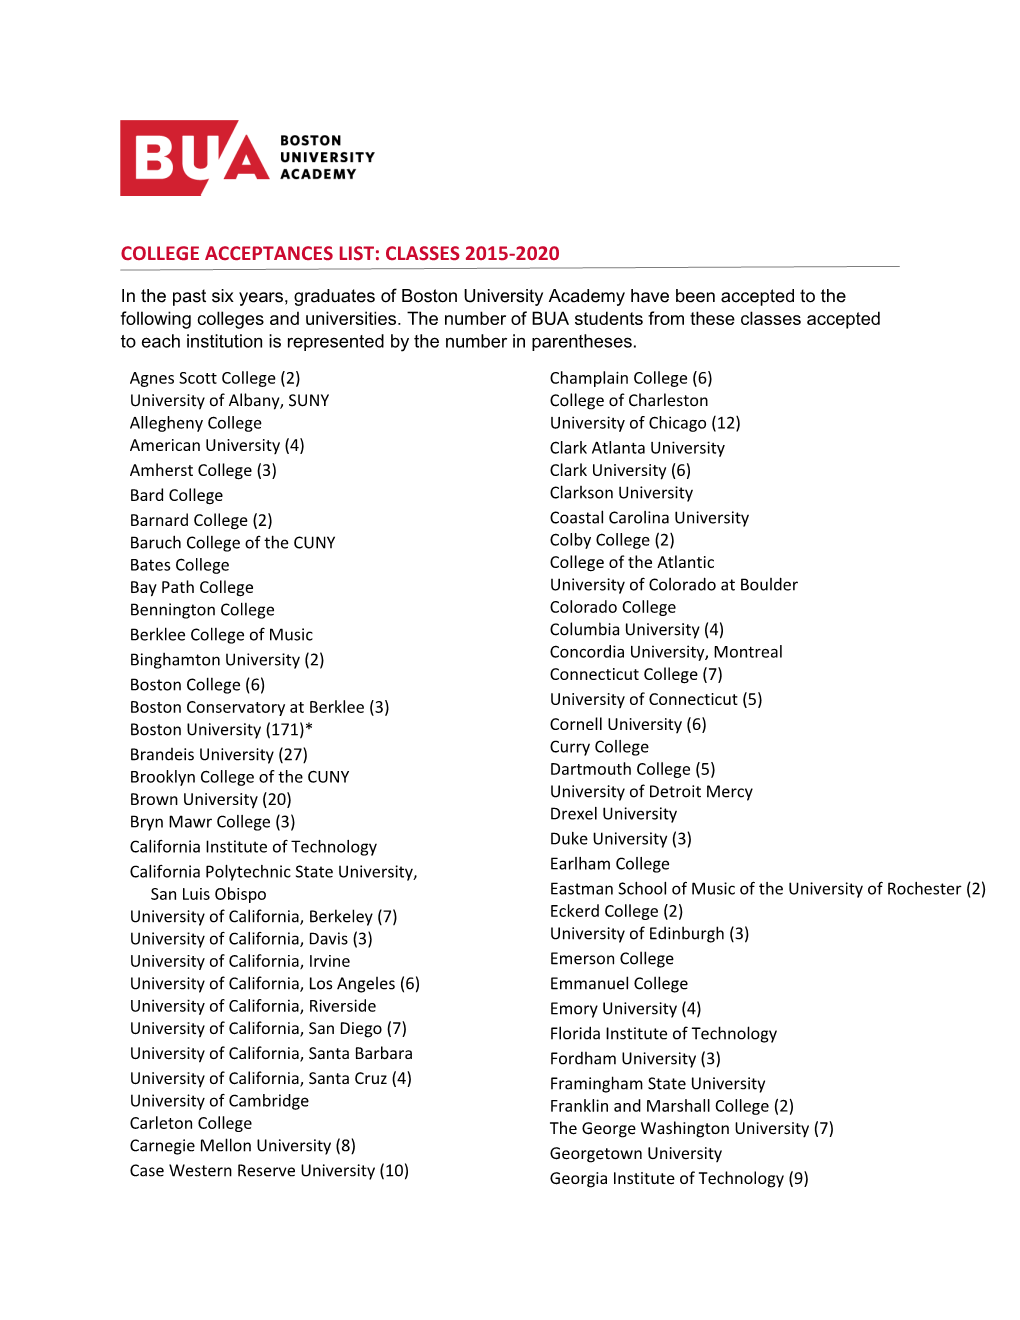 College Acceptances List: Classes 2015-2020